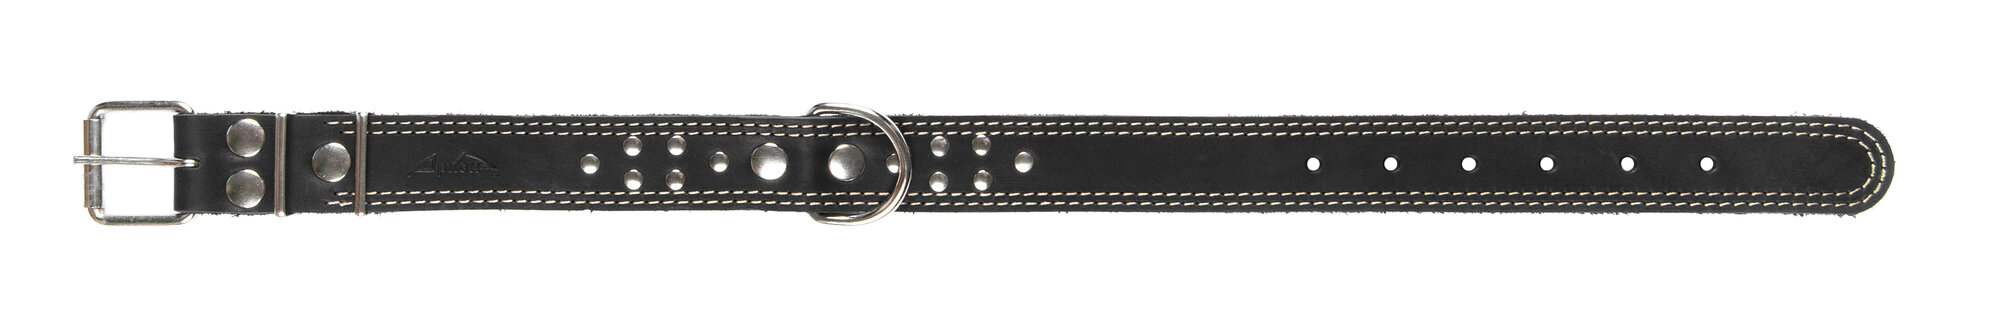 Ошейник аркон кожаный для собак однослойный, украшения, двойная строчка, черный (46-60 см/35 мм)